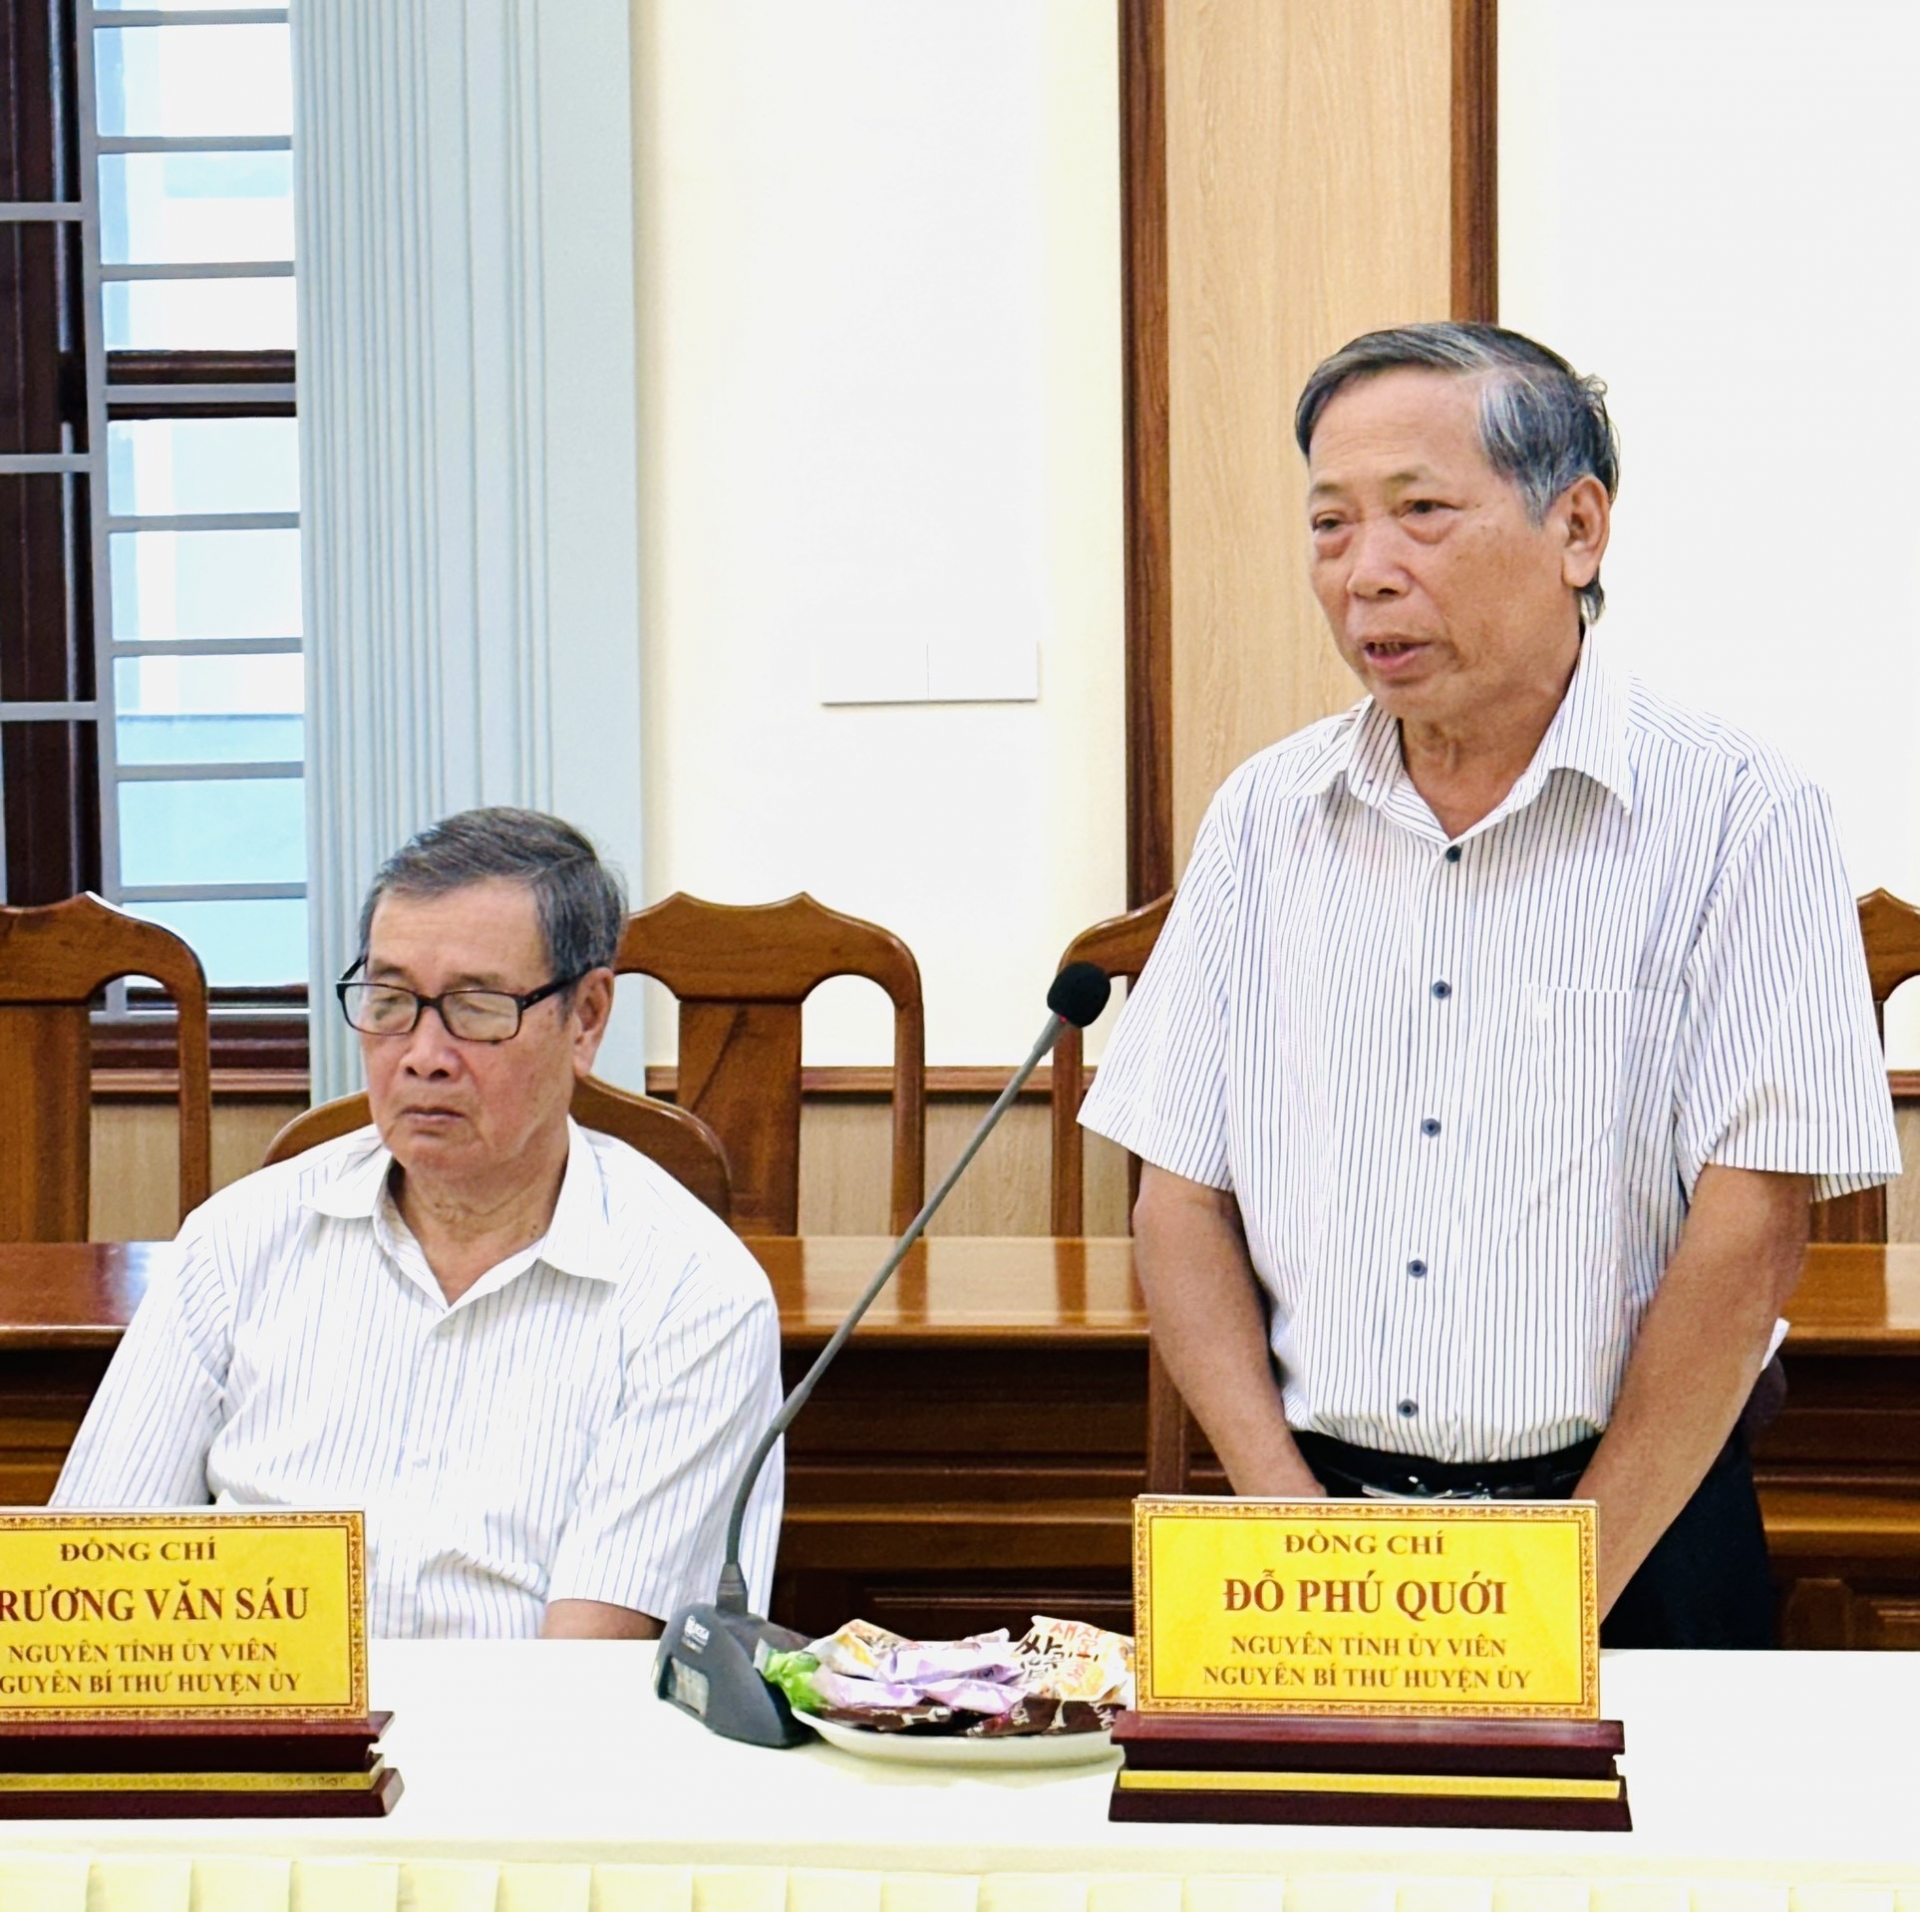 Đồng chí Đỗ Phú Quới - Nguyên Bí thư Huyện ủy Đạ Tẻh chia sẻ ý kiến tâm huyết tại buổi gặp mặt 